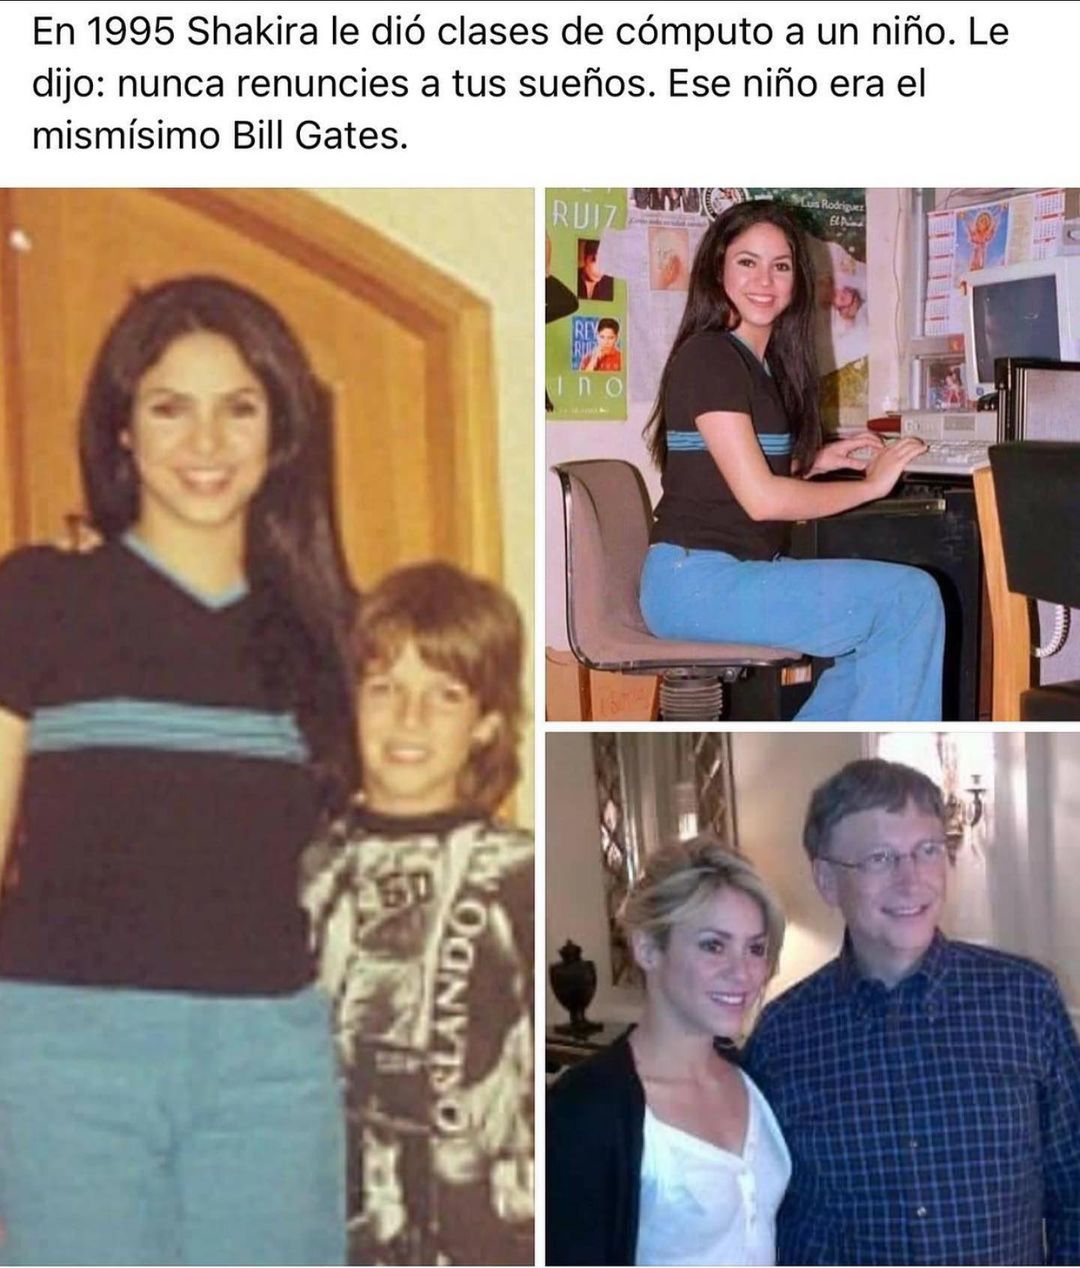 En 1995 Shakira le dio clases de cómputo a un niño. Le dijo: Nunca renuncies a tus sueños. Ese niño era el mismísimo Bill Gates.